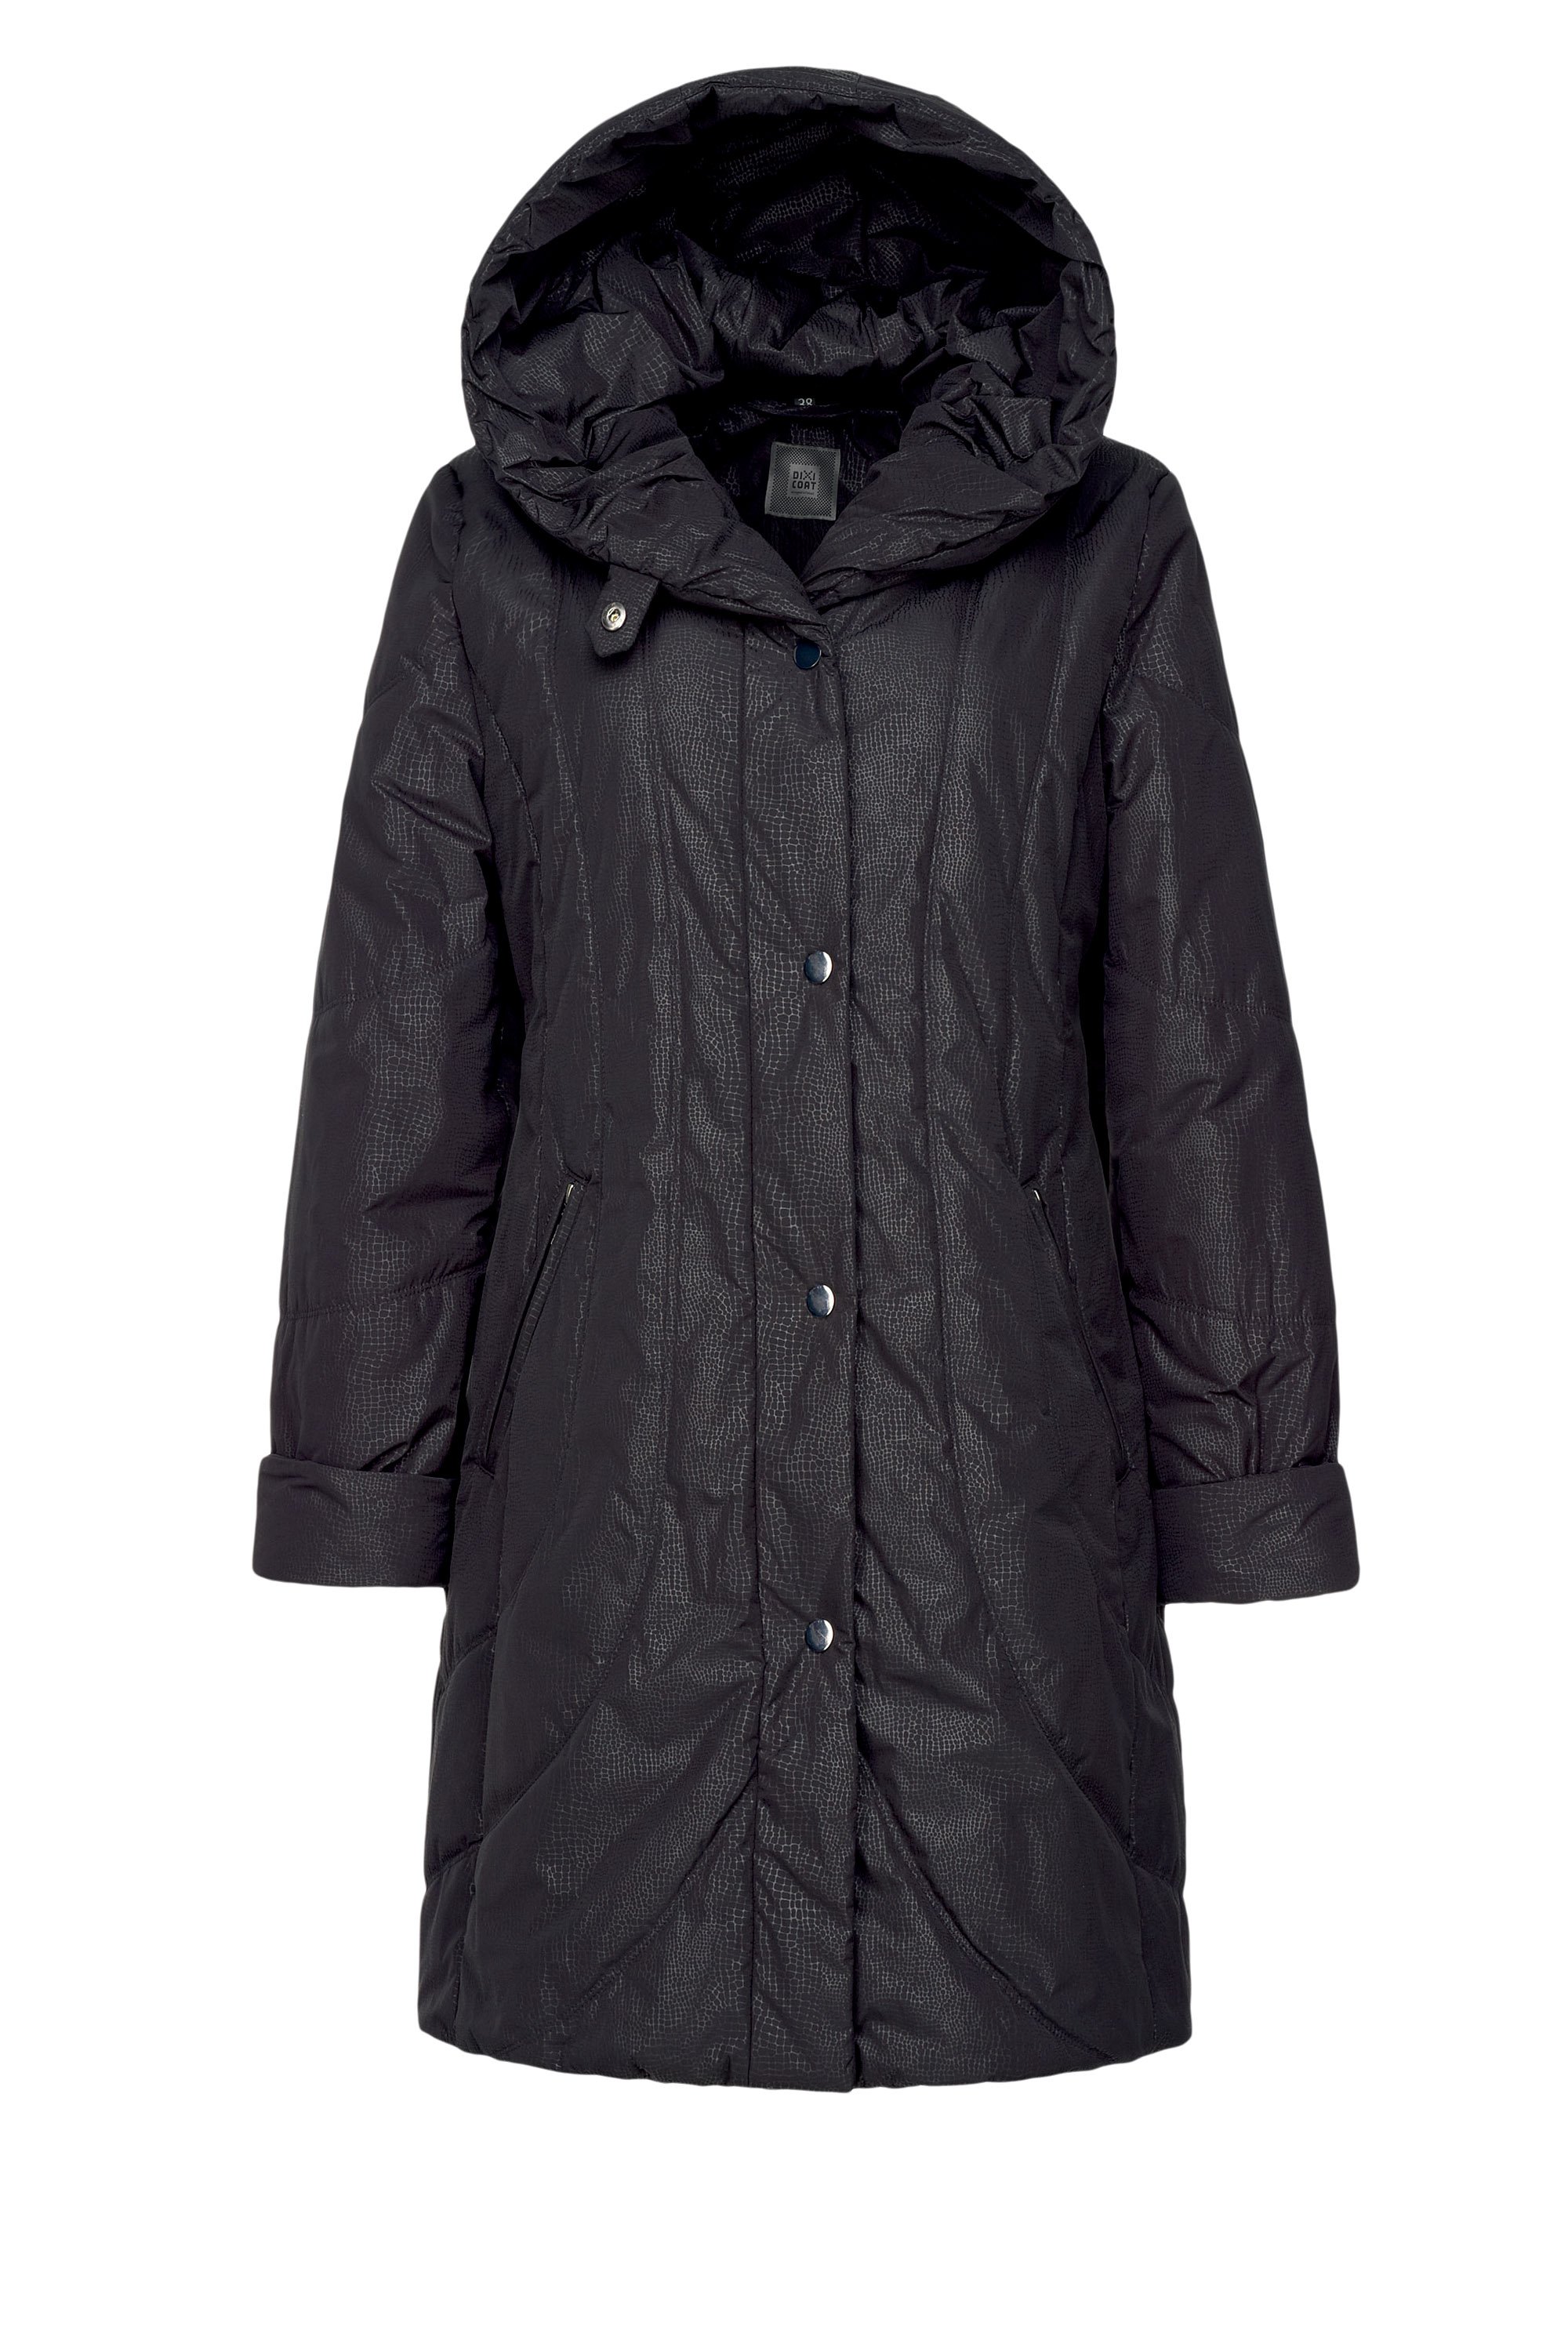 Куртки дикси коат. Пальто финское Dixi Coat 336-261. Дикси Коат женская одежда. Пальто Dixi Coat 5810238.